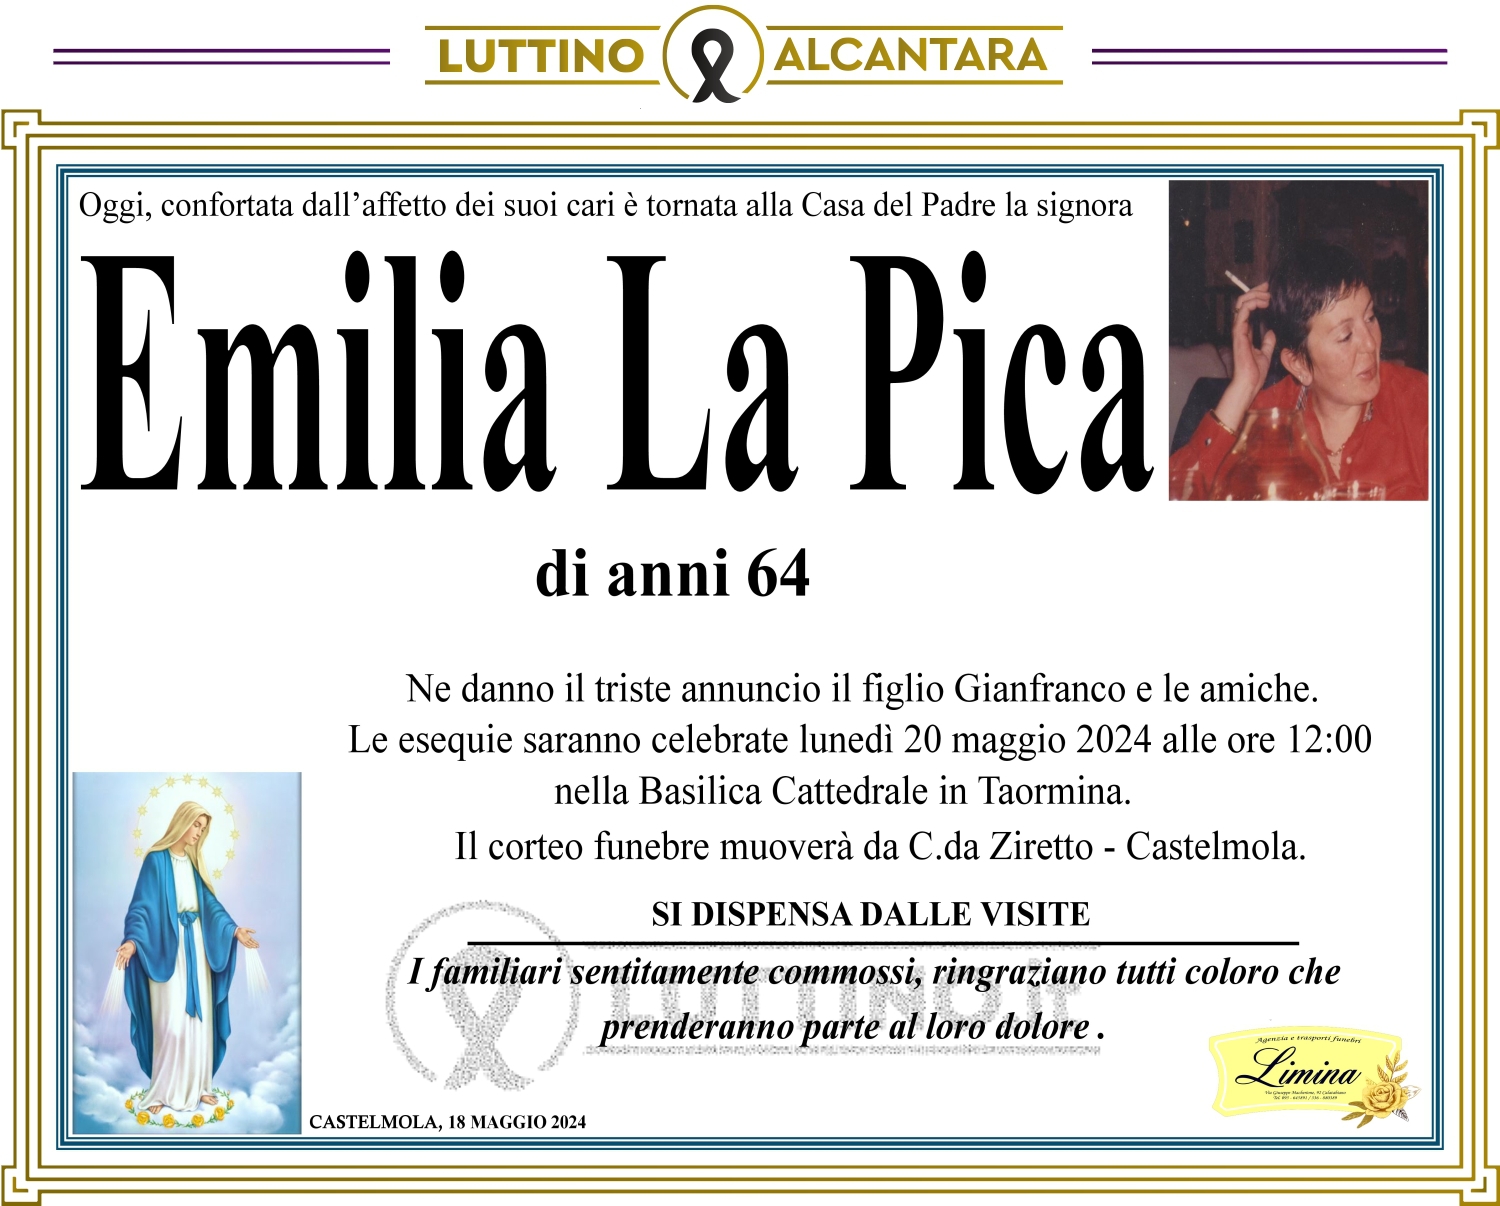 Emilia La Pica